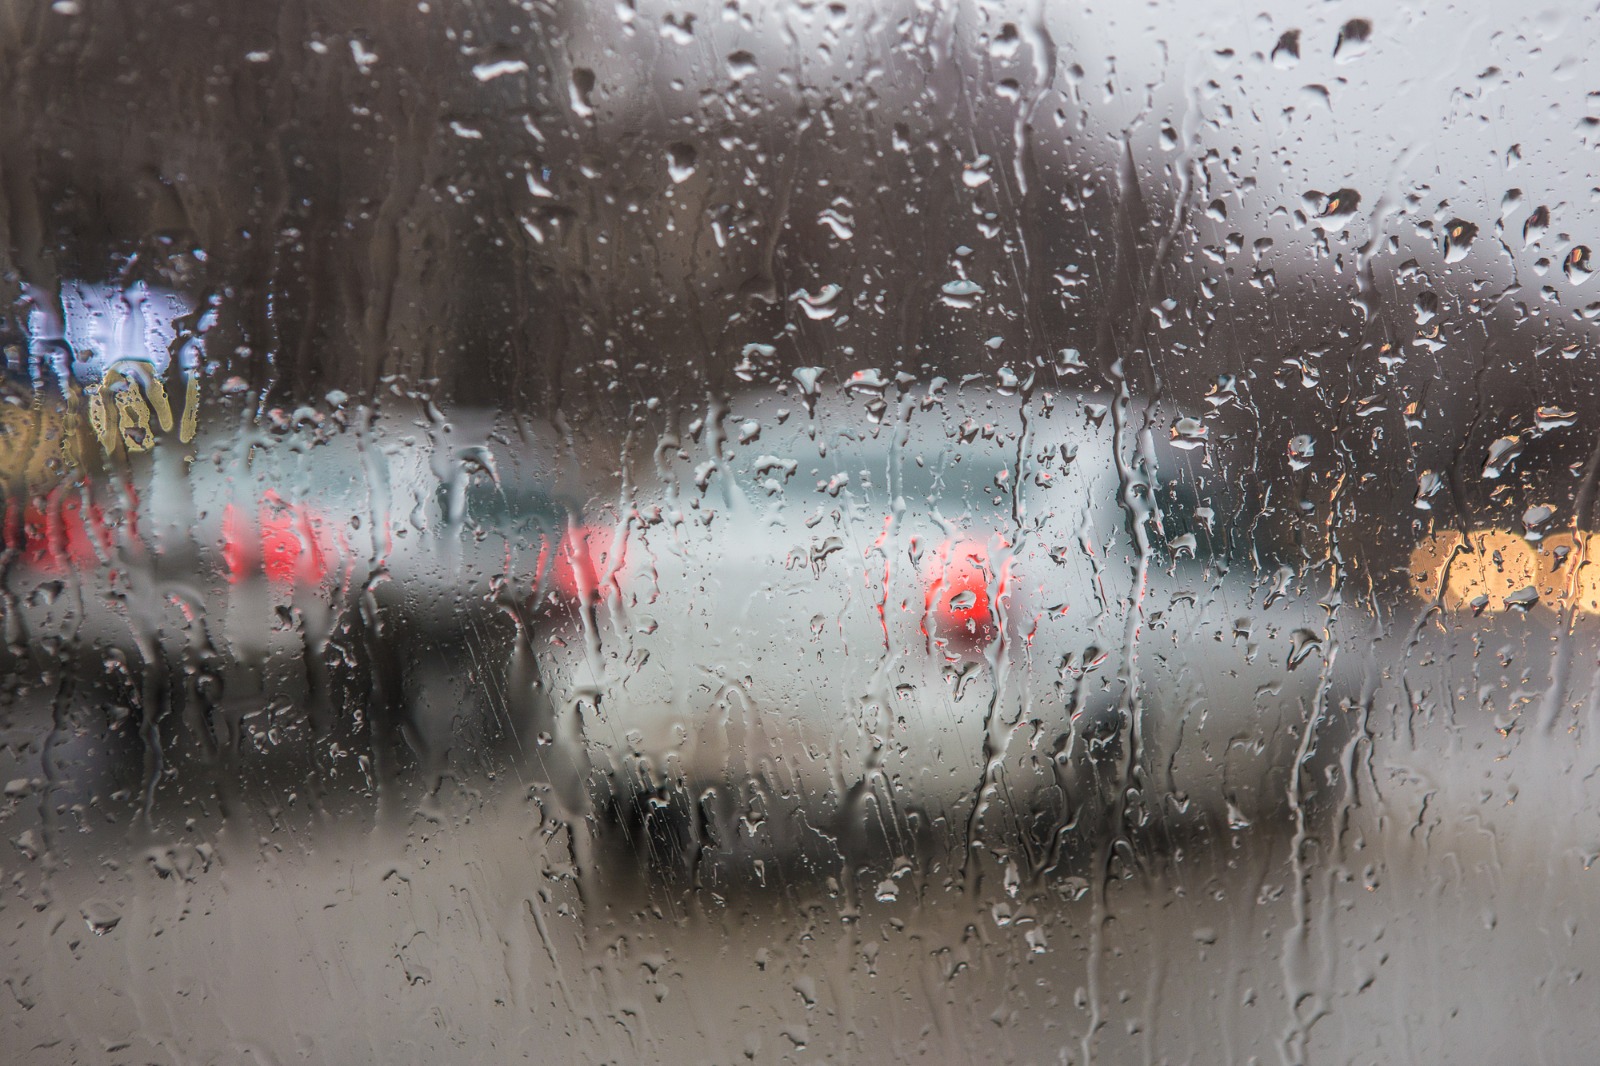 Foto ilustrativa da chuva vista pelo parabrisa de um automóvel